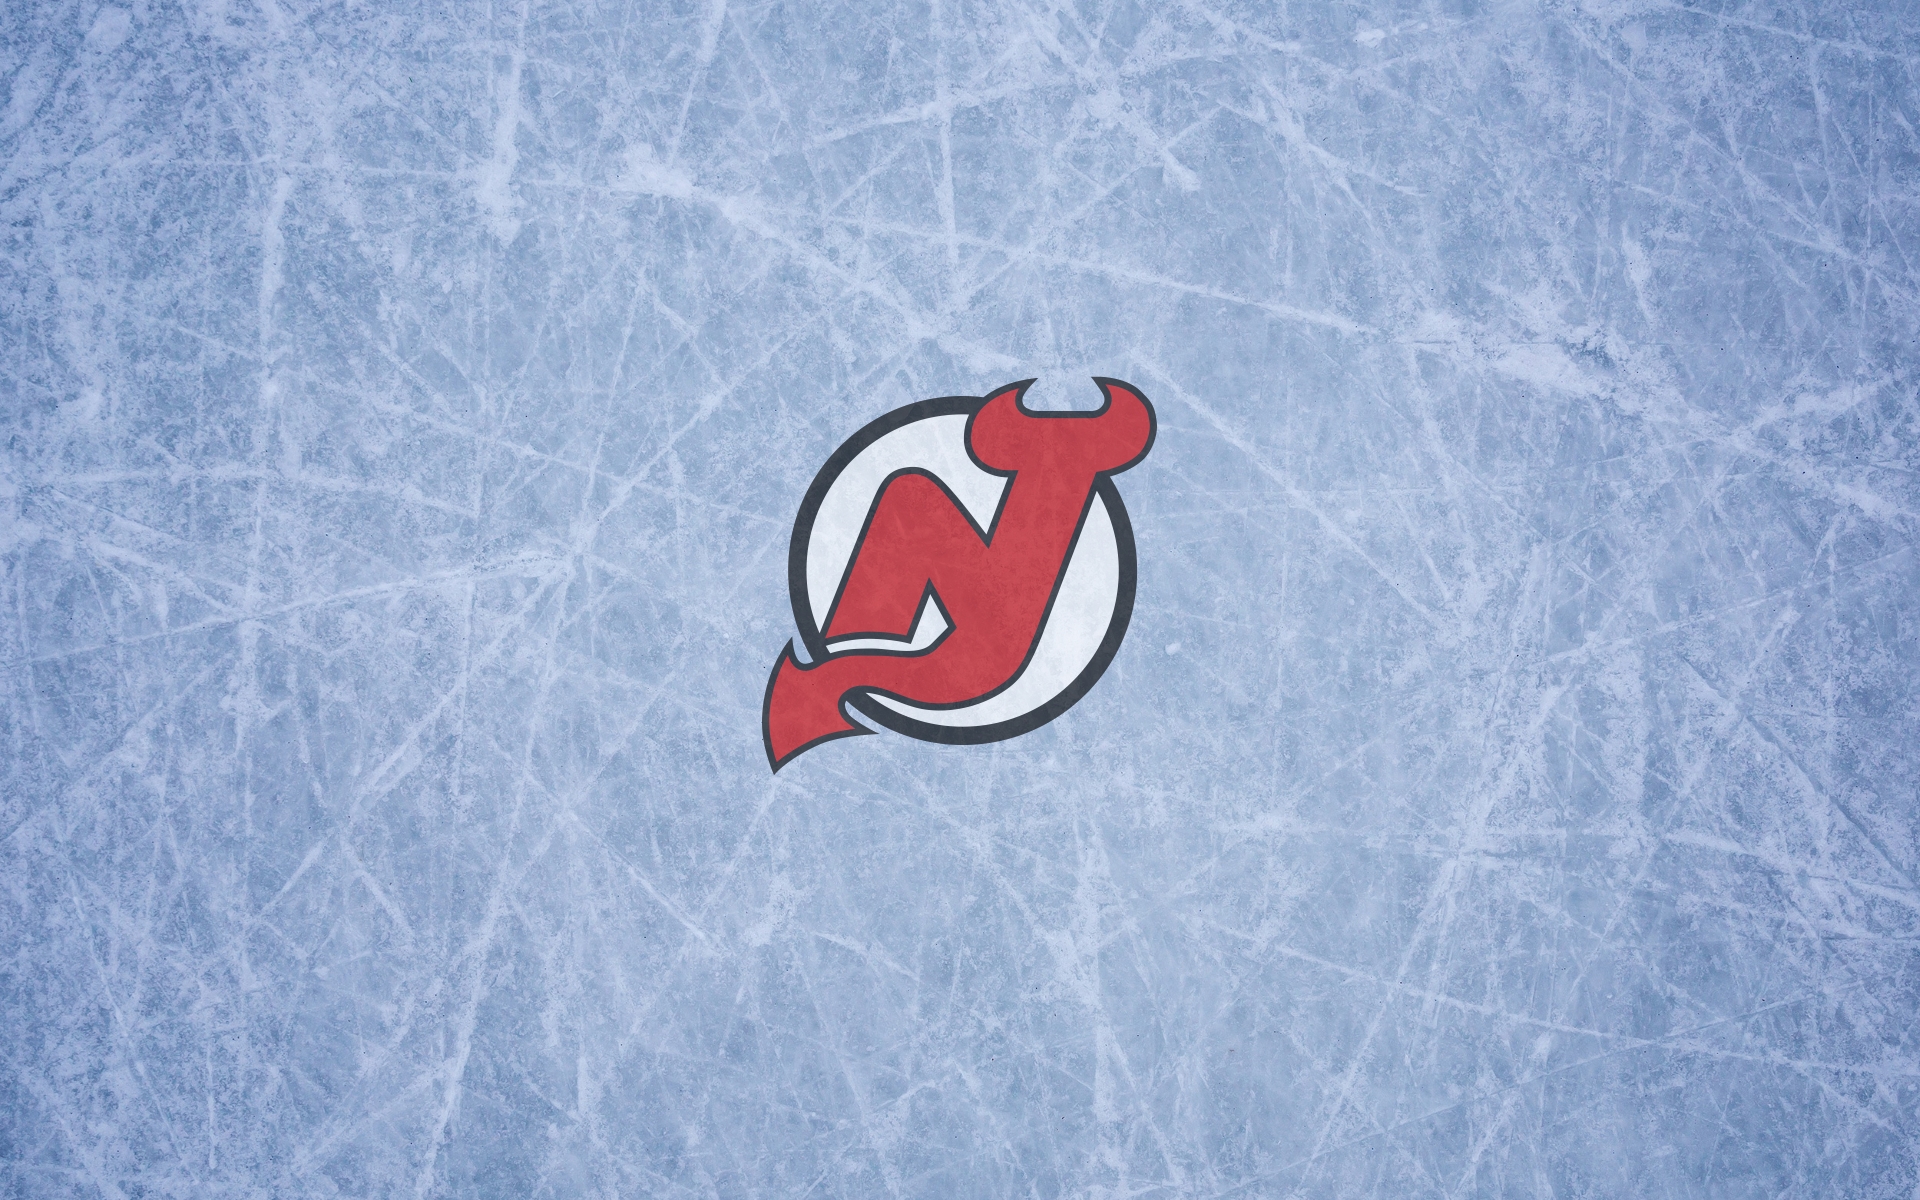 new jersey devils, sports, emblem, logo, nhl, hockey